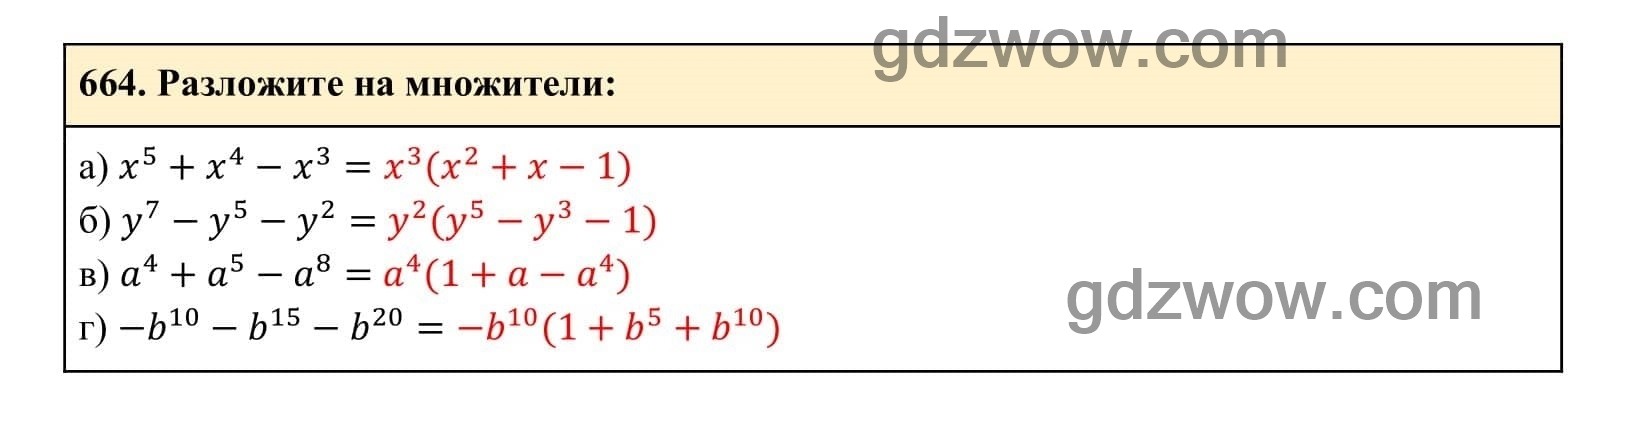 Упражнение 664 - ГДЗ по Алгебре 7 класс Учебник Макарычев (решебник) - GDZwow